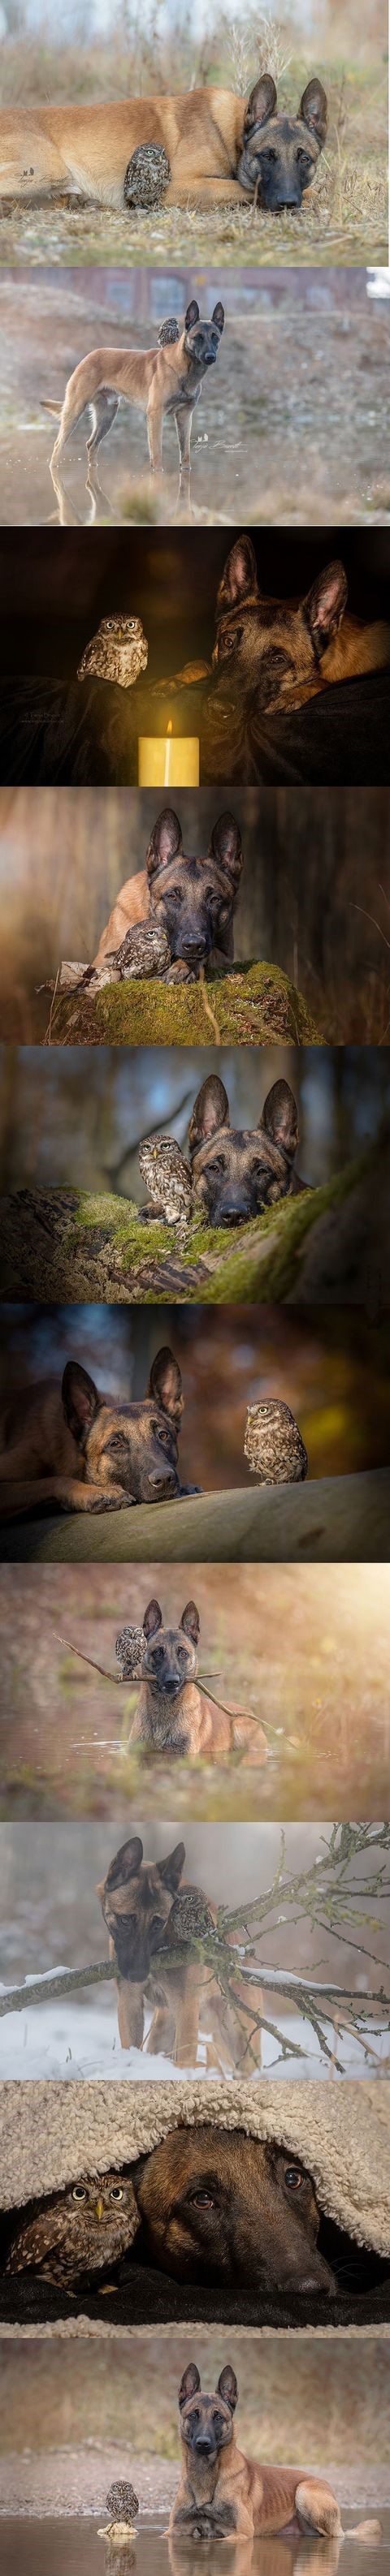 owl-dog-best-buds